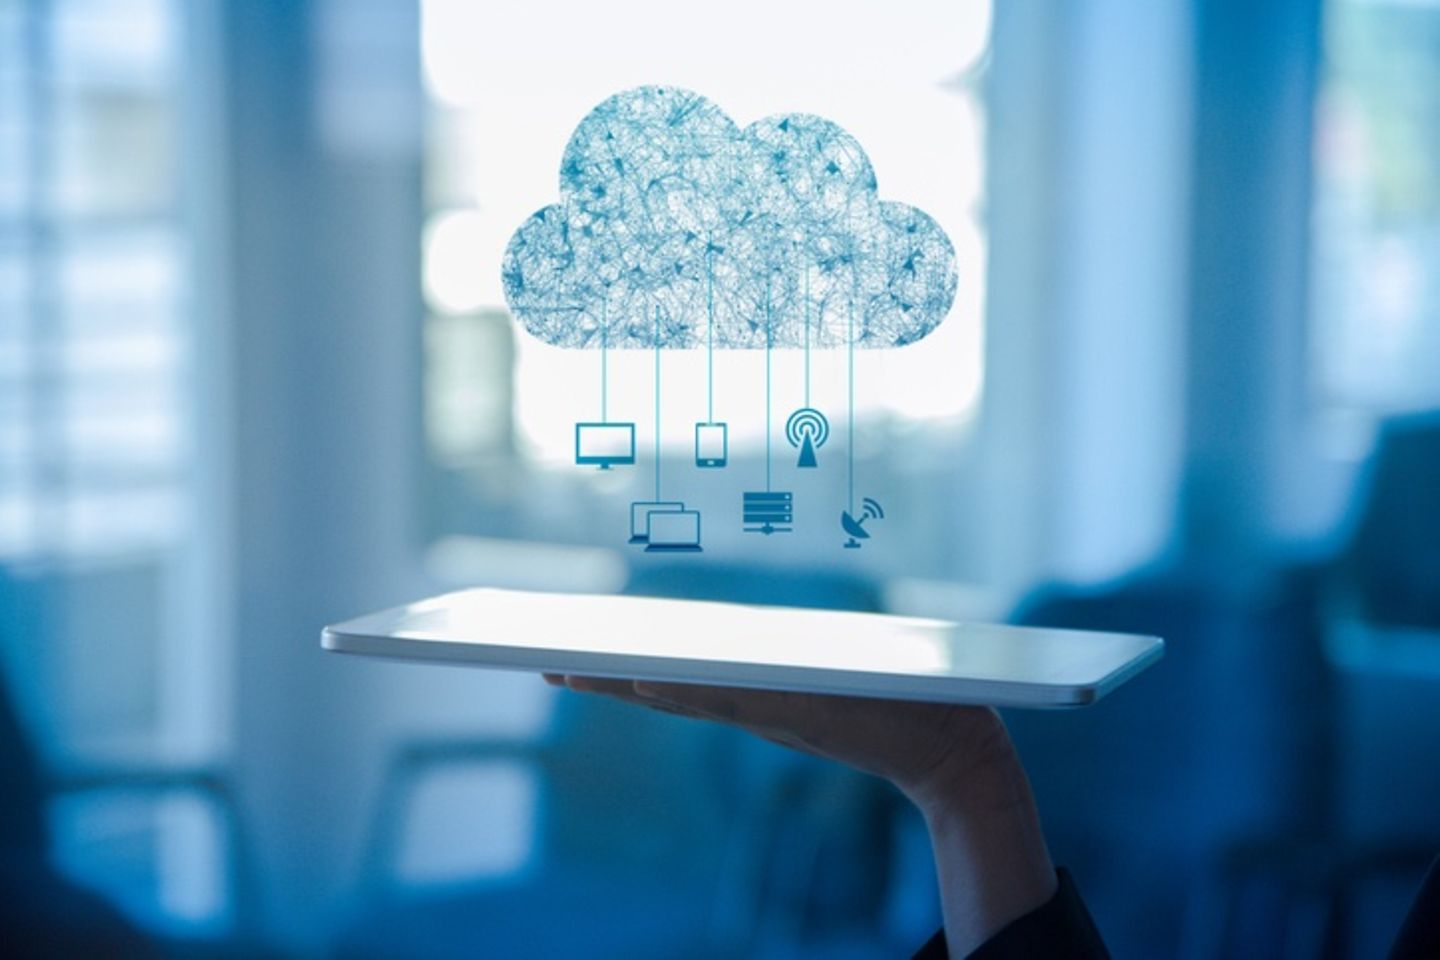 Ein Tablet liegt auf einer Hand, darüber ist eine Zeichnung von einer Wolke und Icons.